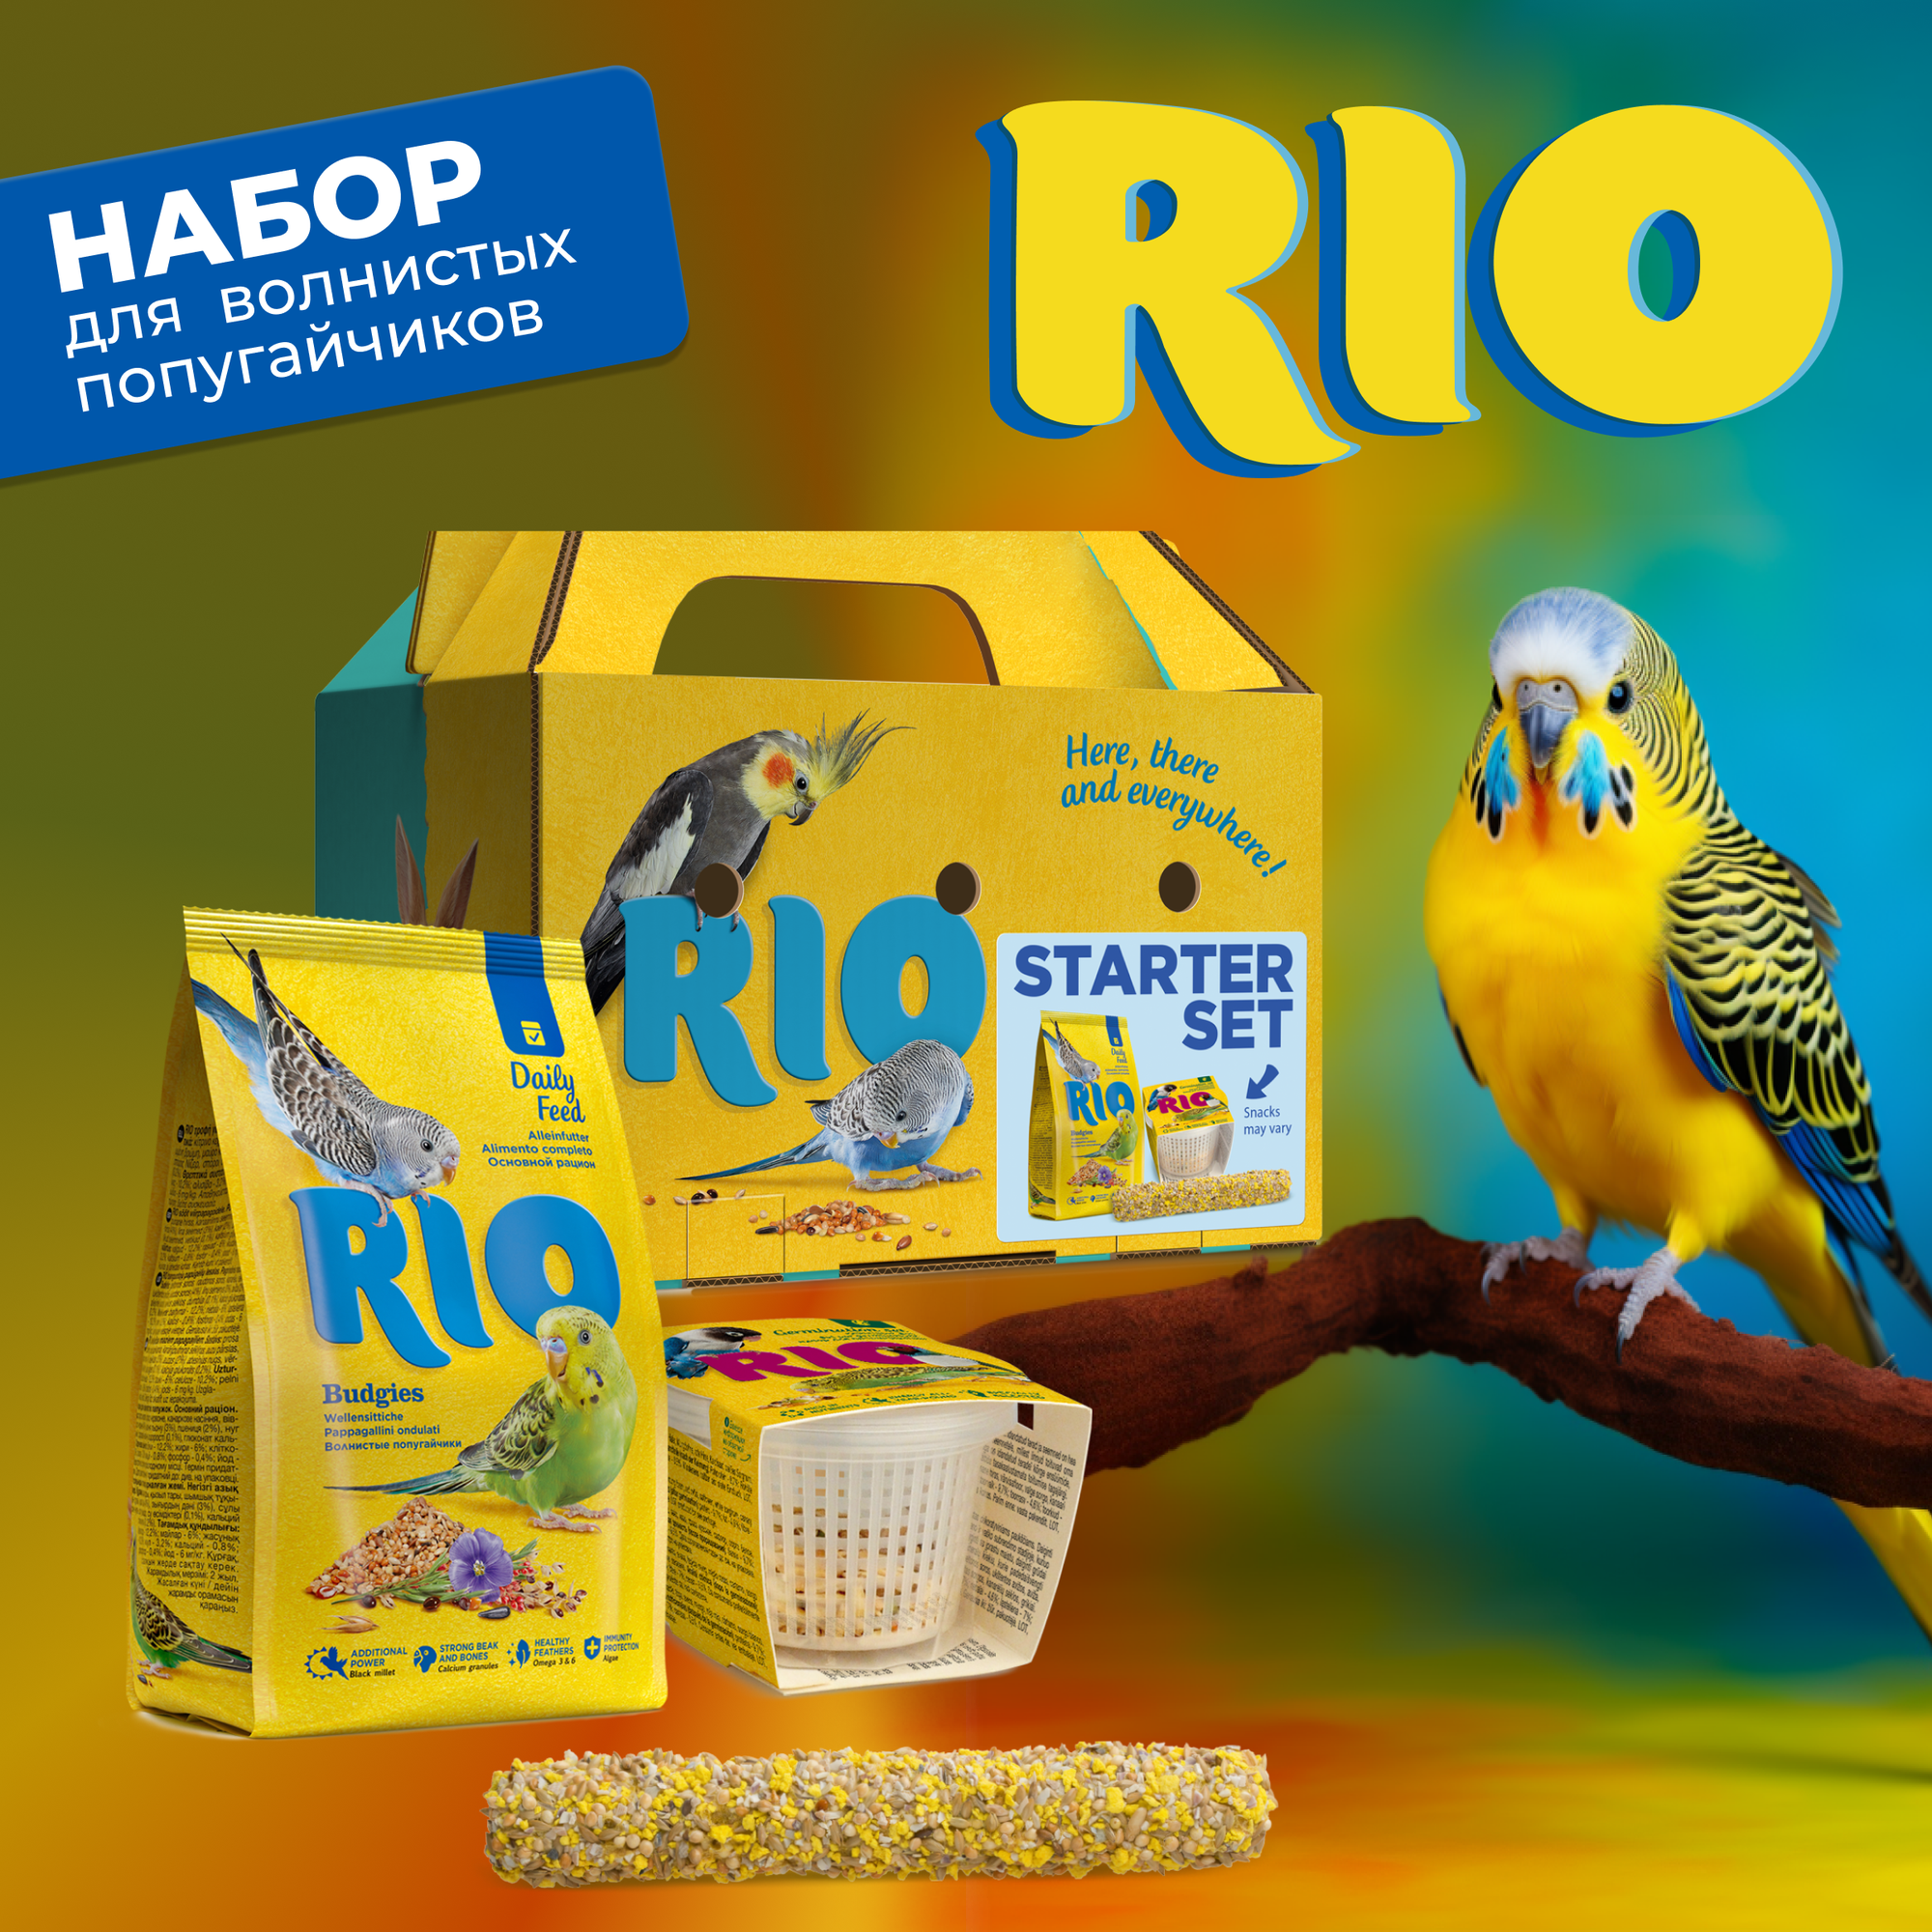 RIO Стартовый набор владельца волнистого попугайчика: картонная переноска, корм для волнистых попугайчиков, набор для проращивания, палочка для птиц